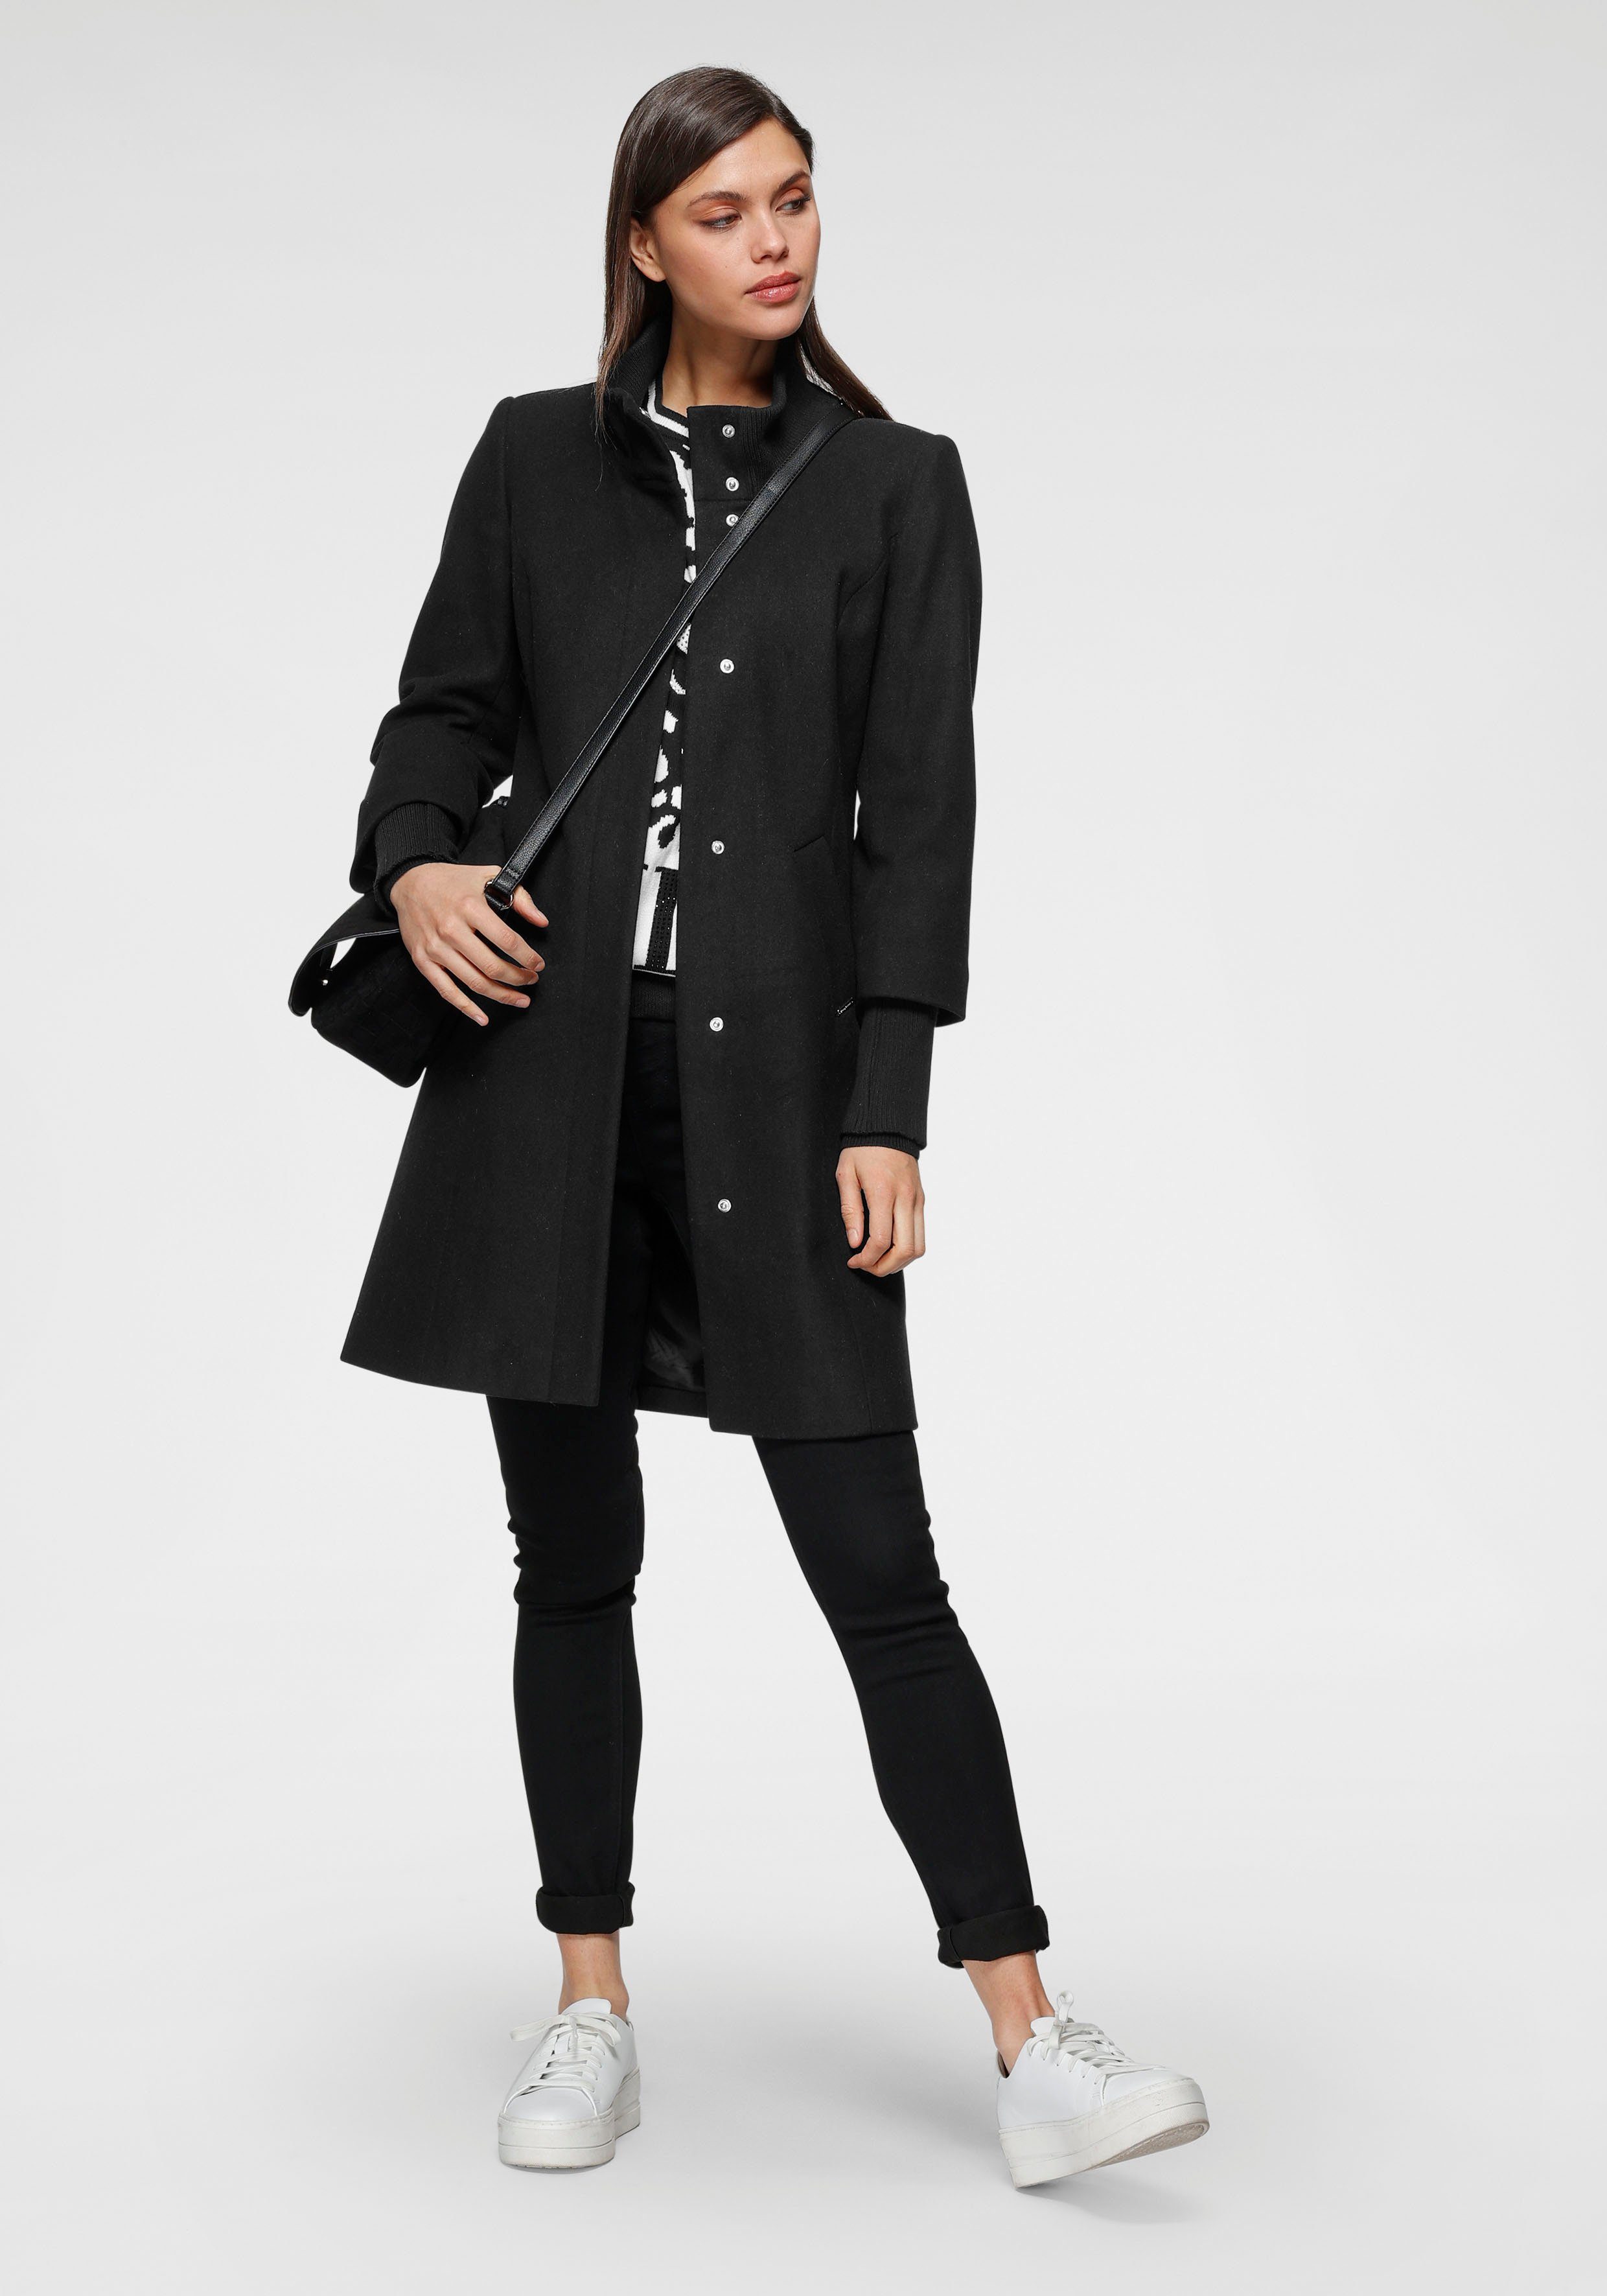 Schwarzer Mantel online kaufen | OTTO